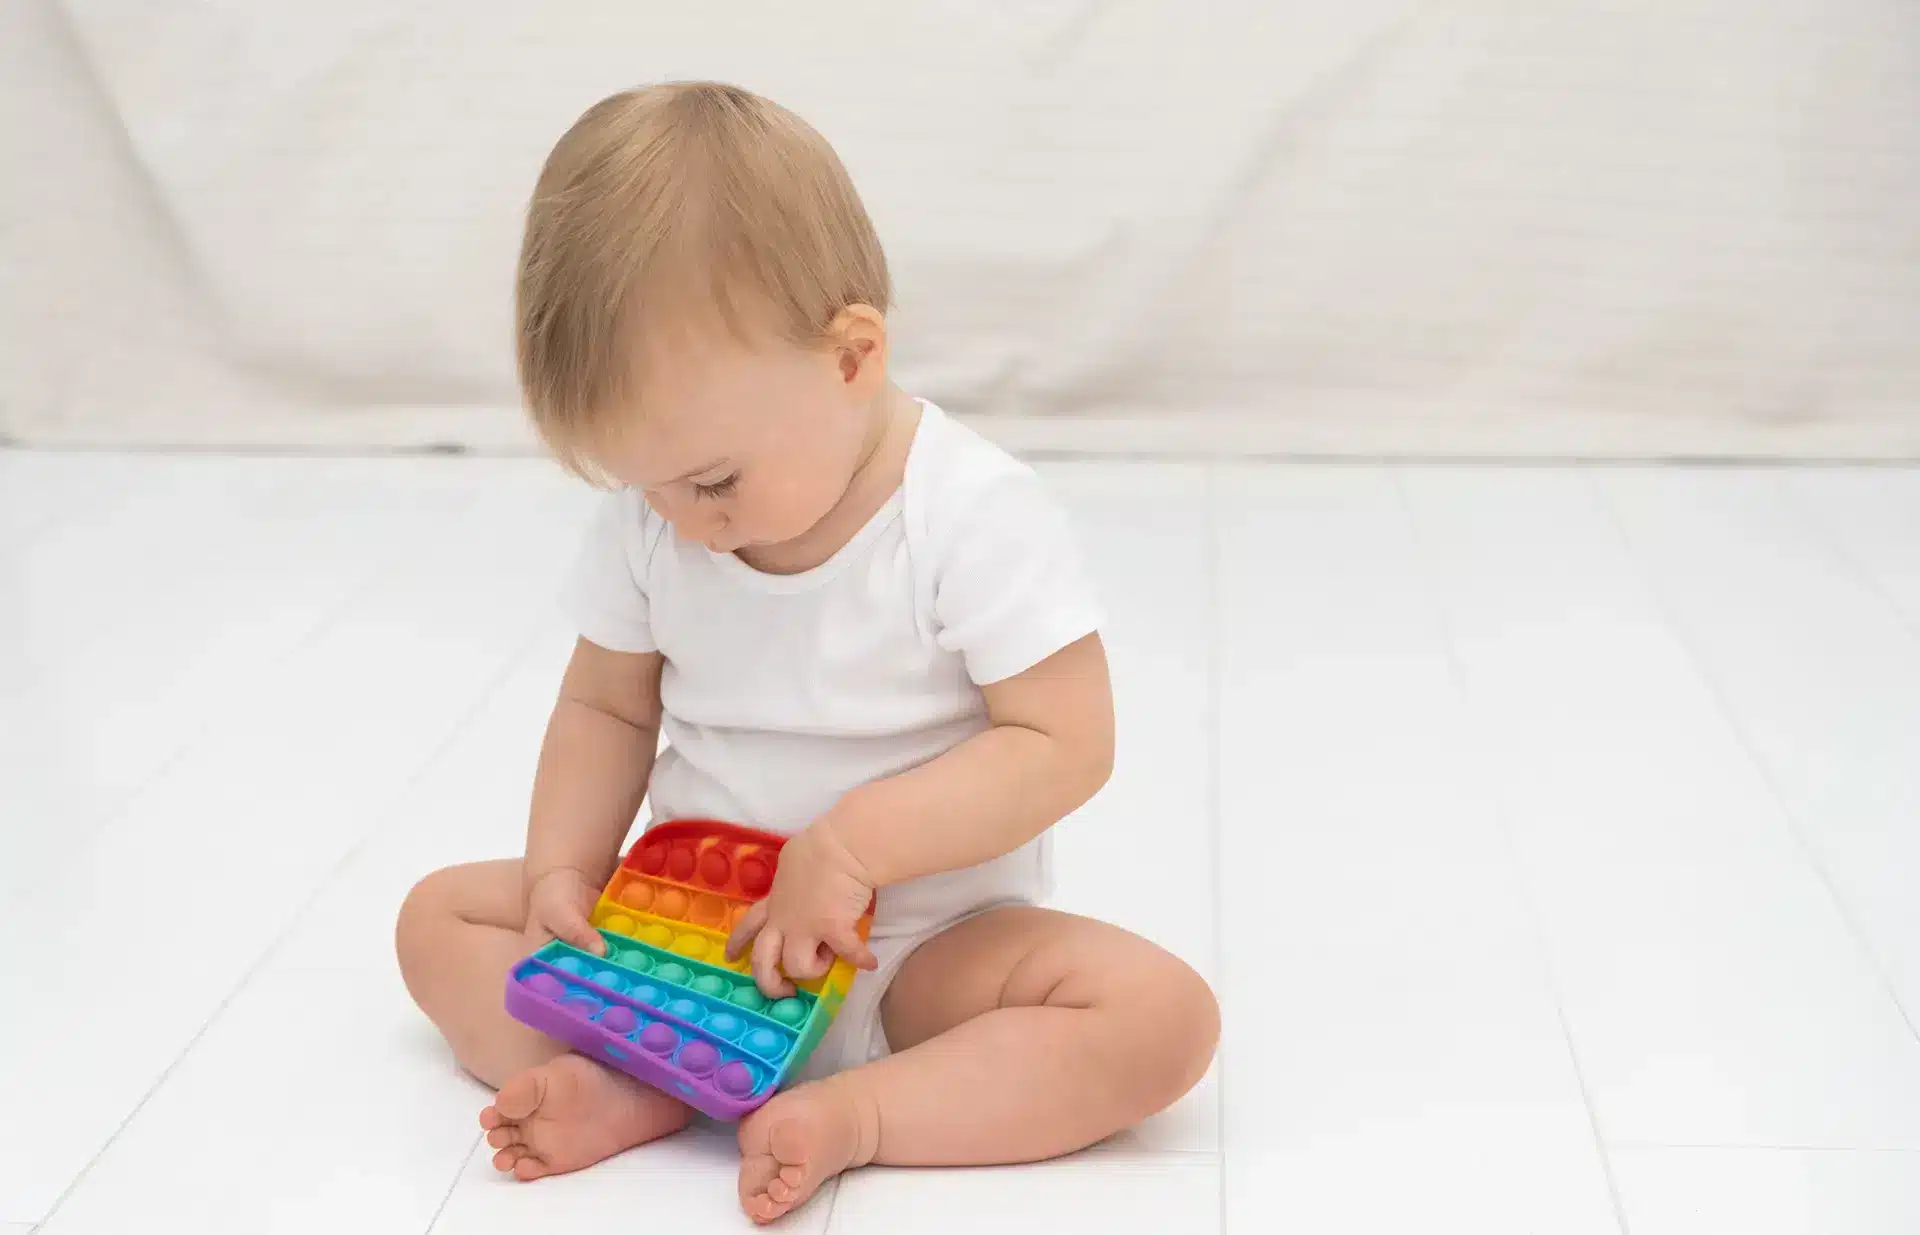 Montessori games to stimulate children's senses